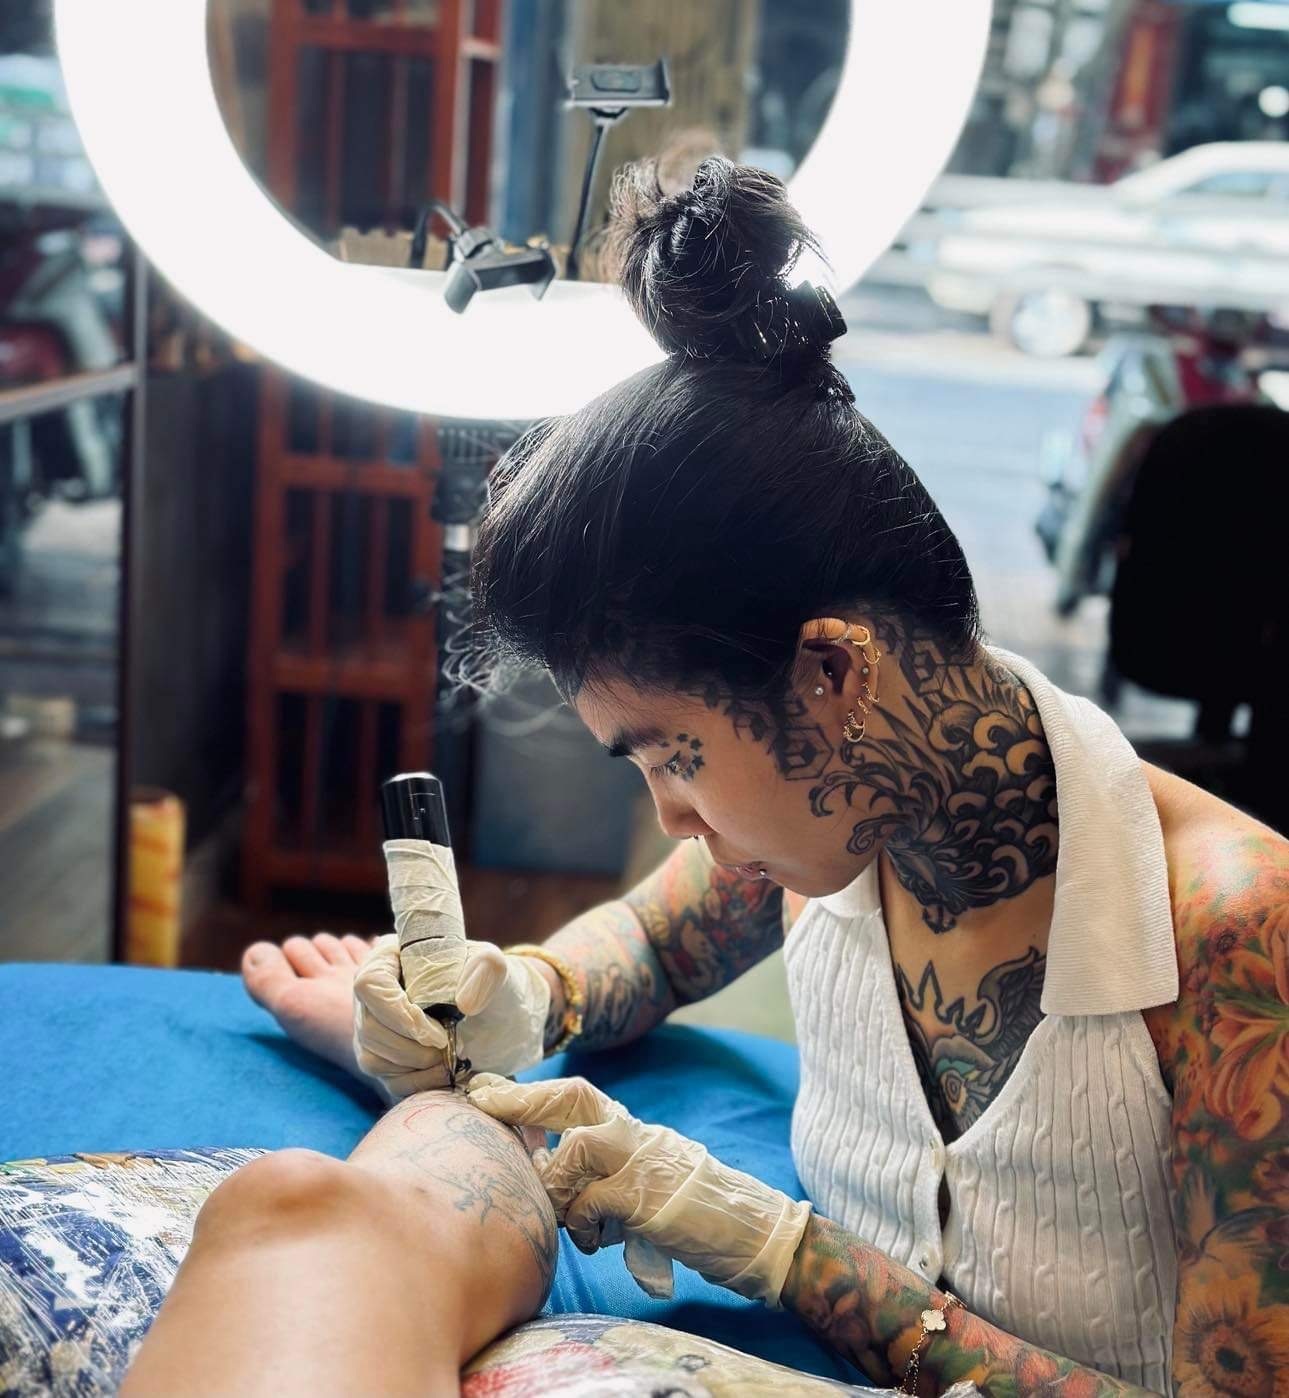 Tattoo Gà xăm hình nghệ thuật uy tín quận Gò Vấp  Tattoo Gà